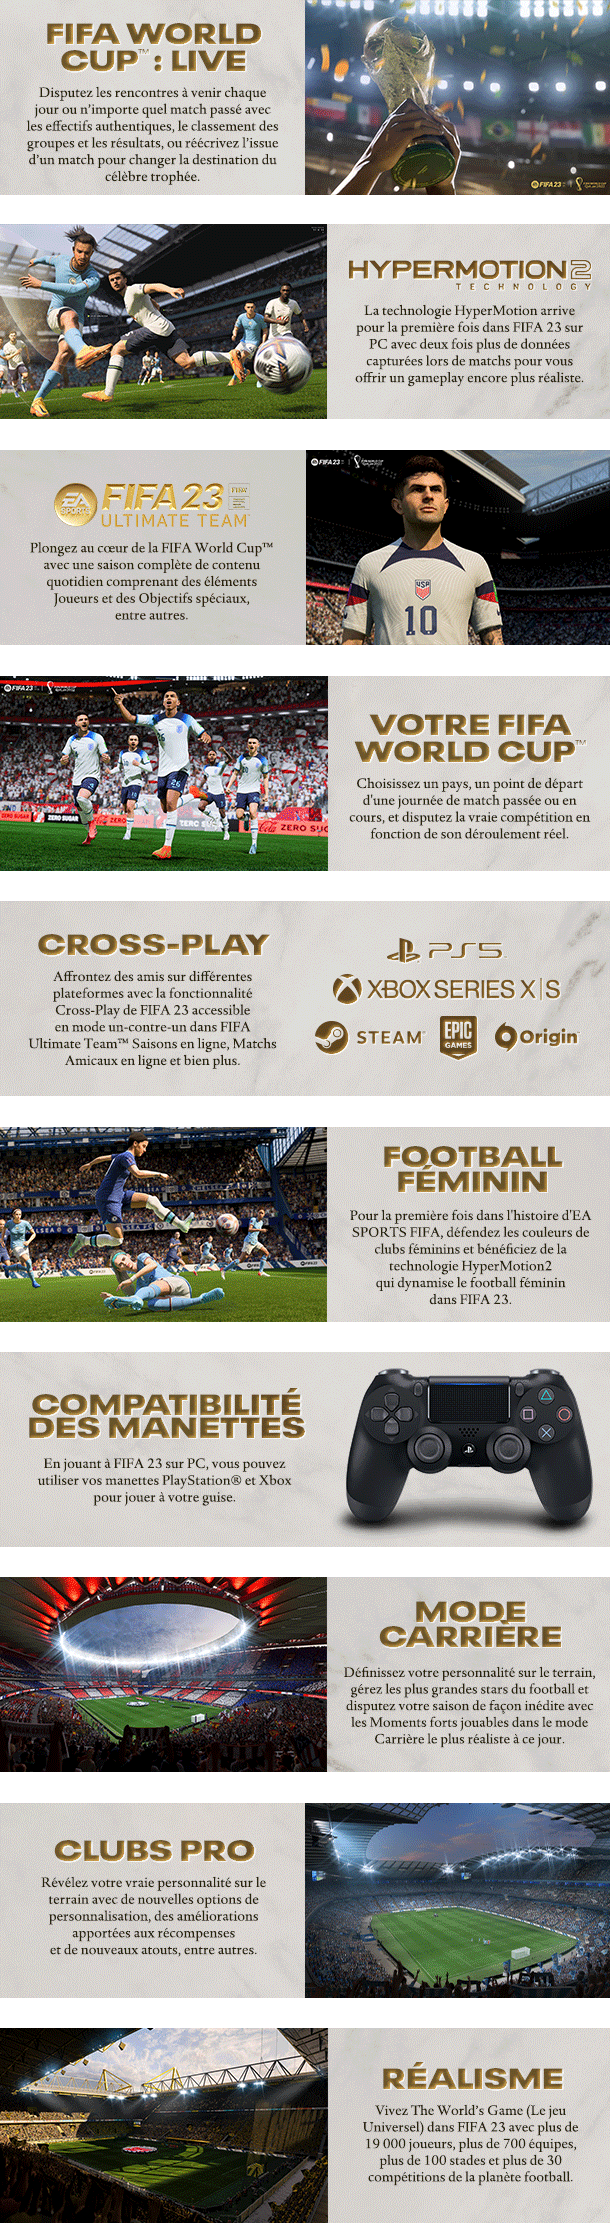 FIFA 21 : Les détenteurs de la PS5 peuvent-ils jouer contre des amis sur PS4  ?